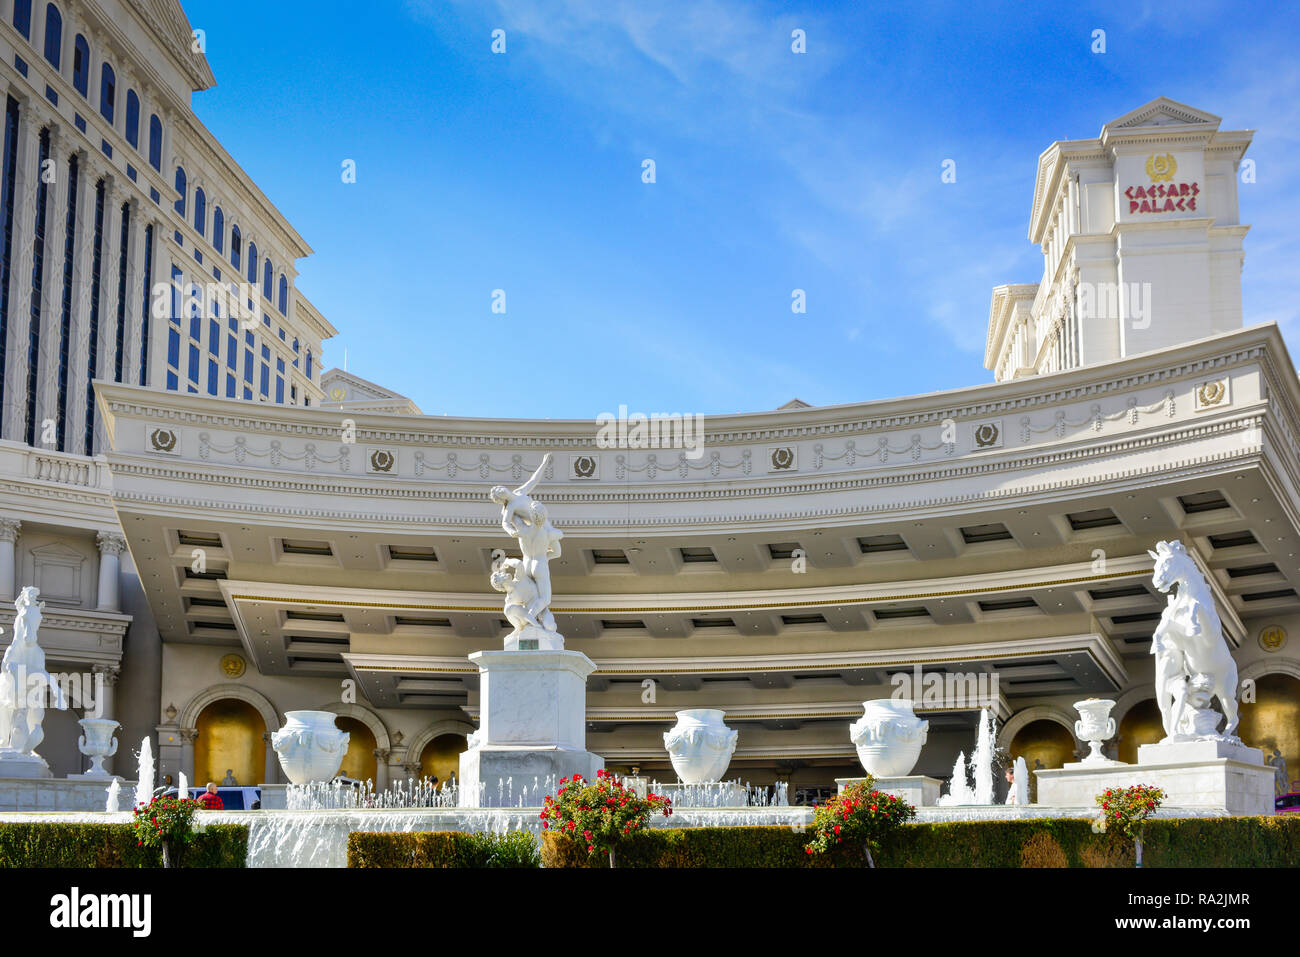 L'opulent entrée de Caesars Palace Hotel et Casino avec fontaines et statues en marbre blanc sur le Strip à Las Vegas, NV Banque D'Images